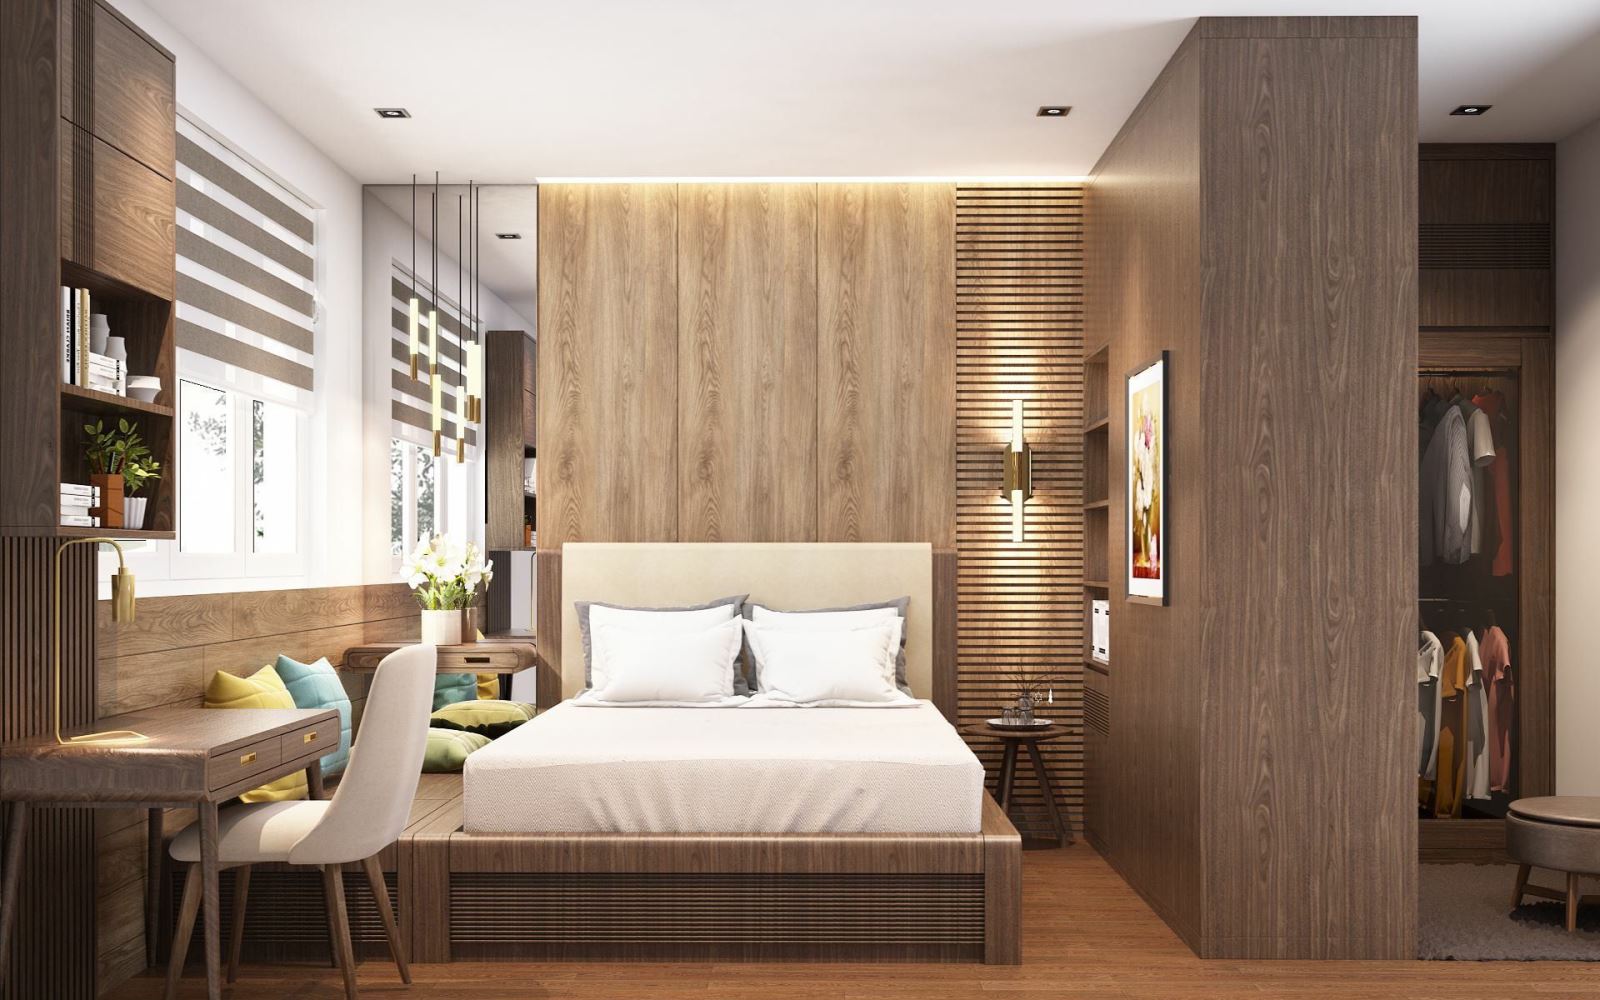 Trọn bộ kinh nghiệm thiết kế nội thất phòng ngủ khách sạn được tiết lộ từ chuyên gia